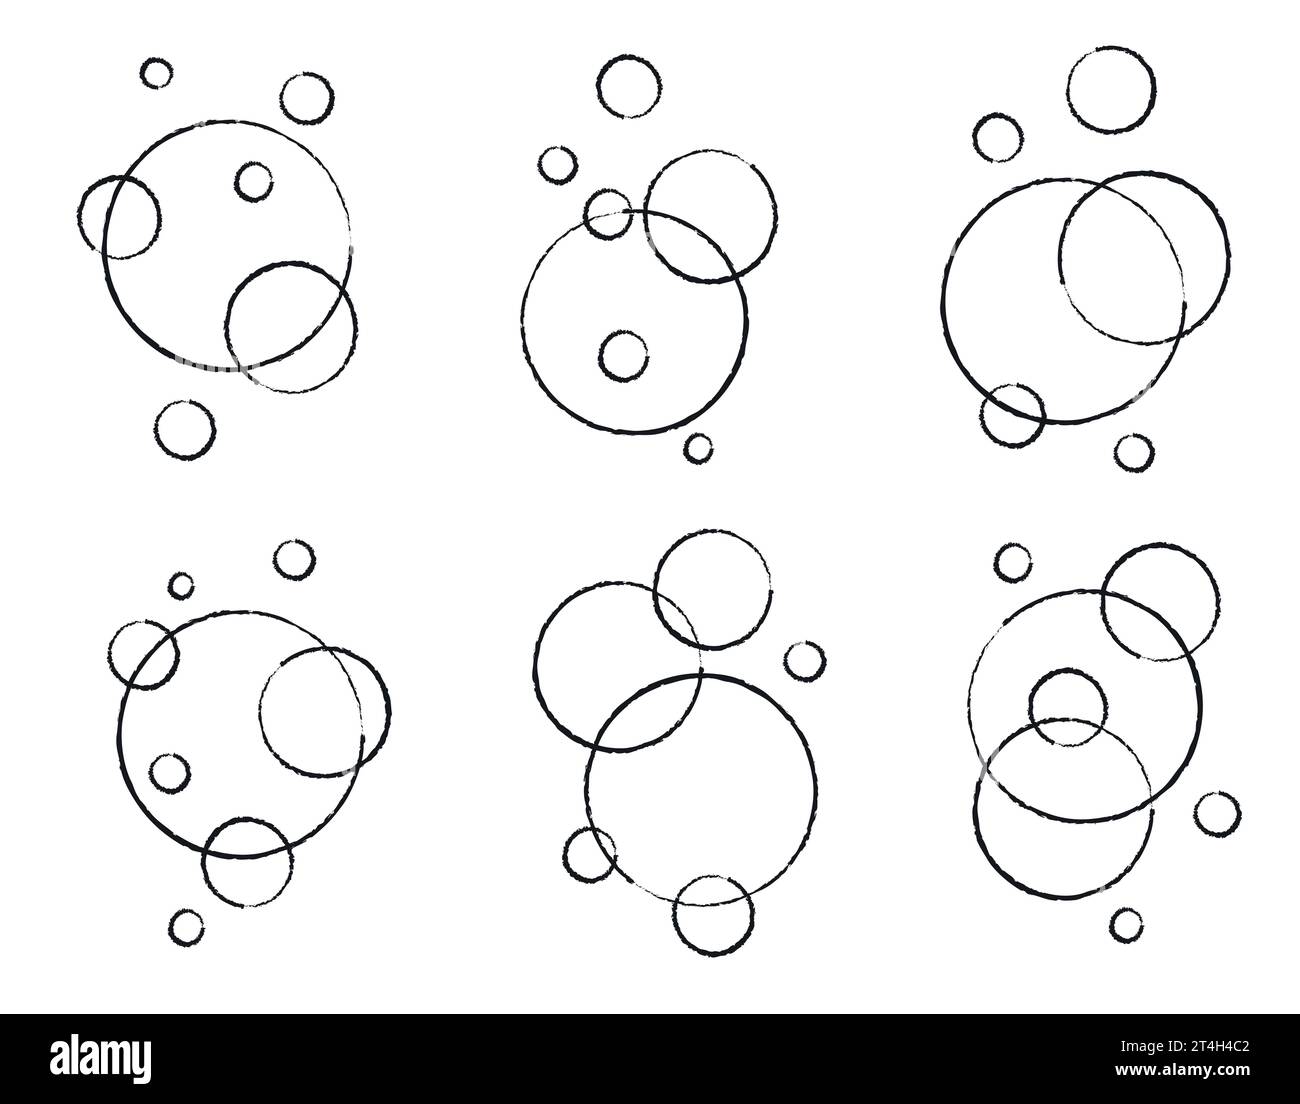 Ensemble de bulles de ligne plate faites par des brosses. Mousse de savon, boisson gazeuse, pictogramme de bulle d'oxygène, illustration vectorielle. Illustration de Vecteur